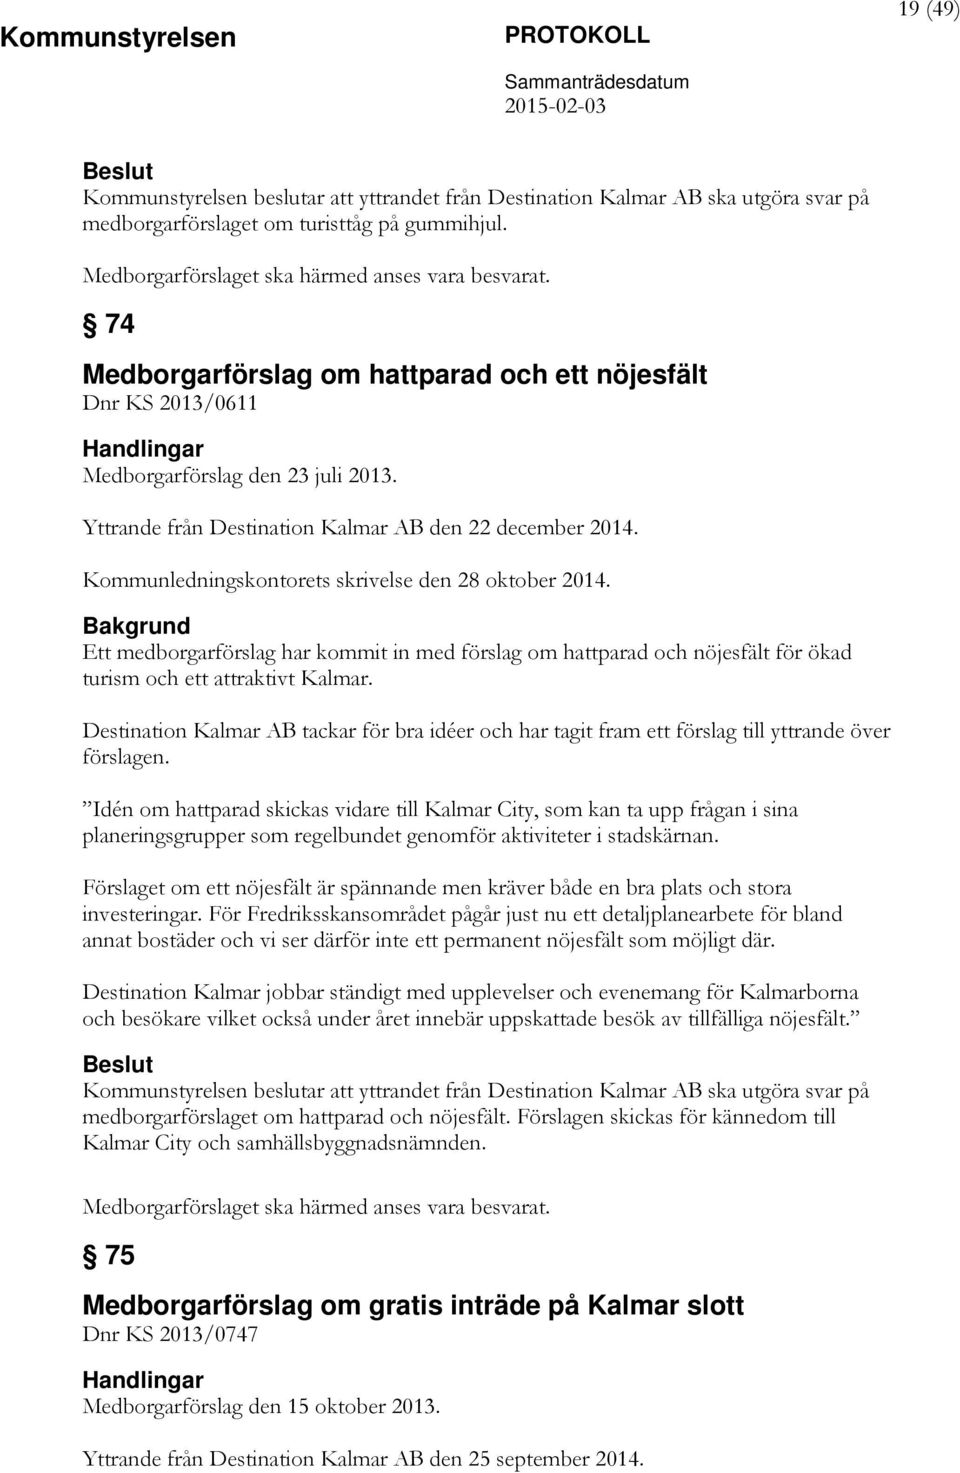 Kommunledningskontorets skrivelse den 28 oktober 2014. Ett medborgarförslag har kommit in med förslag om hattparad och nöjesfält för ökad turism och ett attraktivt Kalmar.